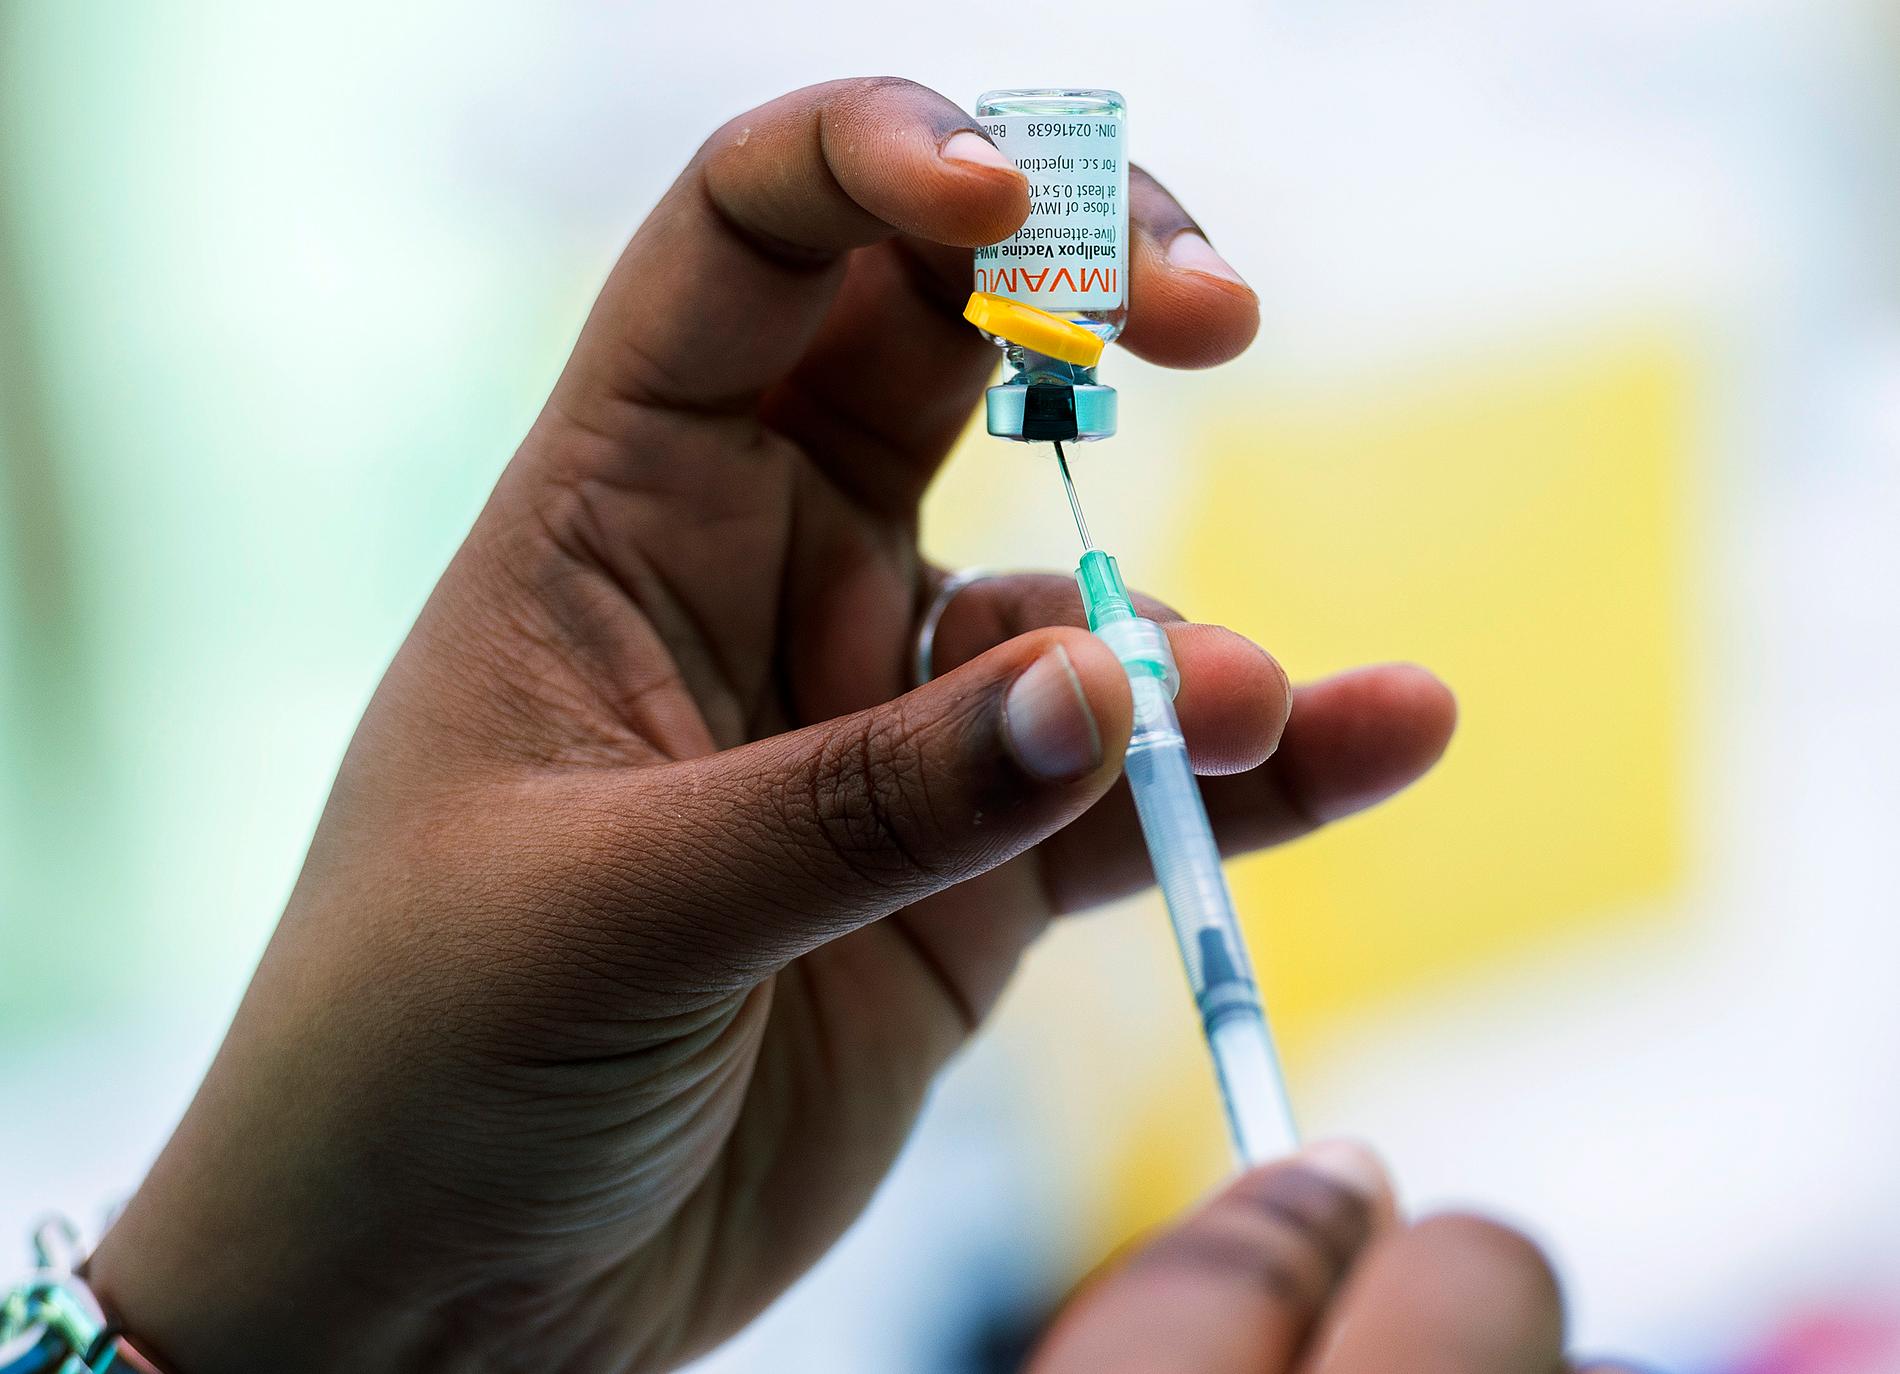 I Kanada har vaccineringen mot apkoppor redan dragit igång. 